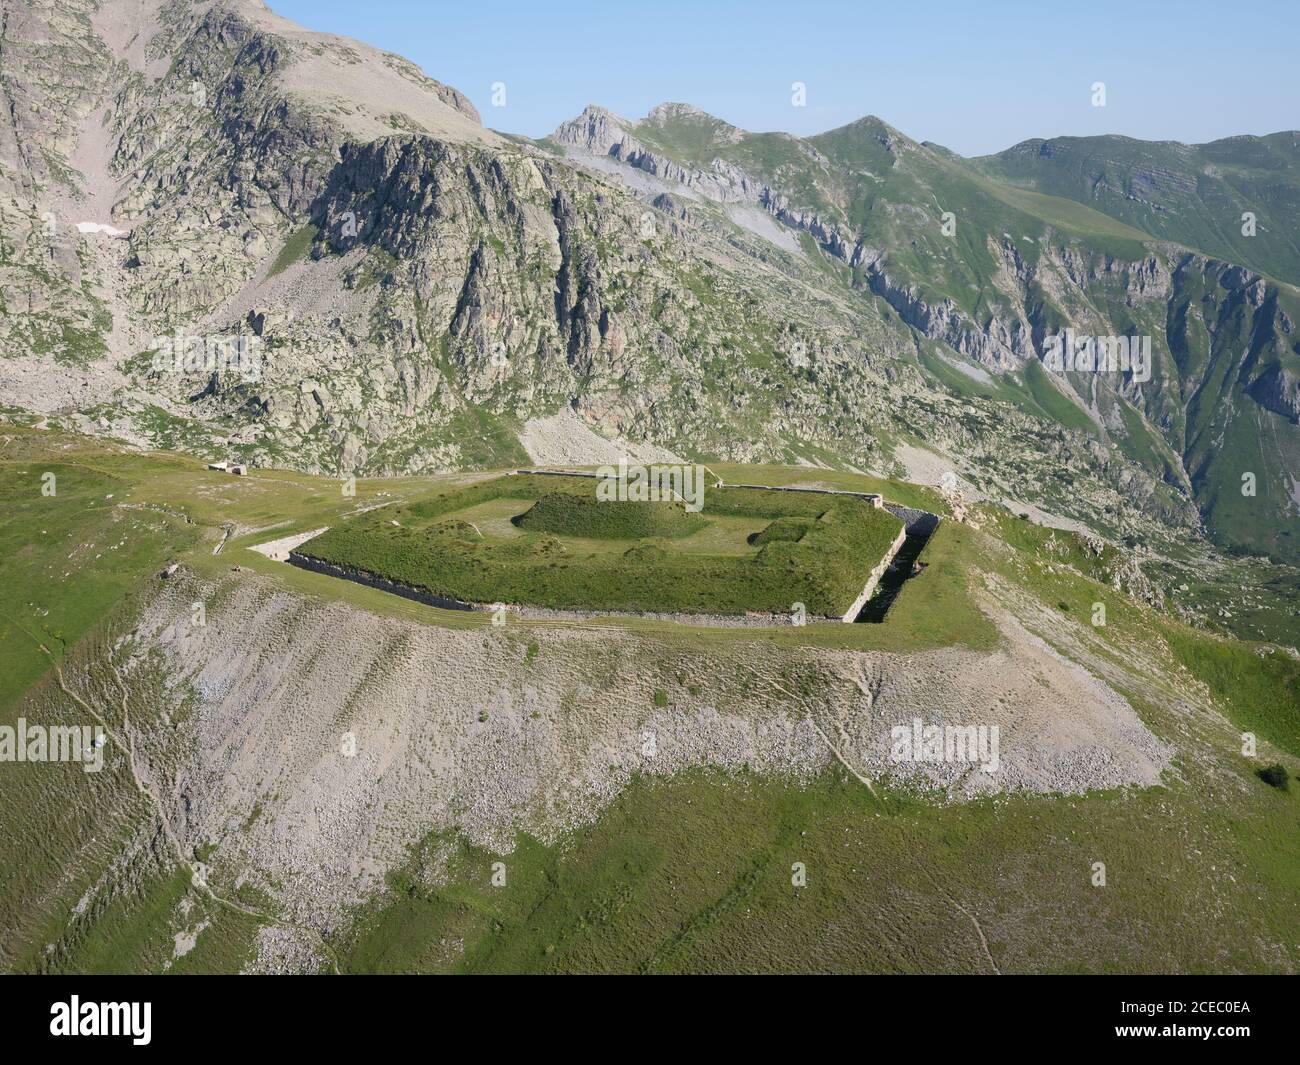 VISTA AEREA. Fort de Giaure una vecchia fortificazione militare sopra col de Tende. Tende, Alpi Marittime, Francia. Foto Stock